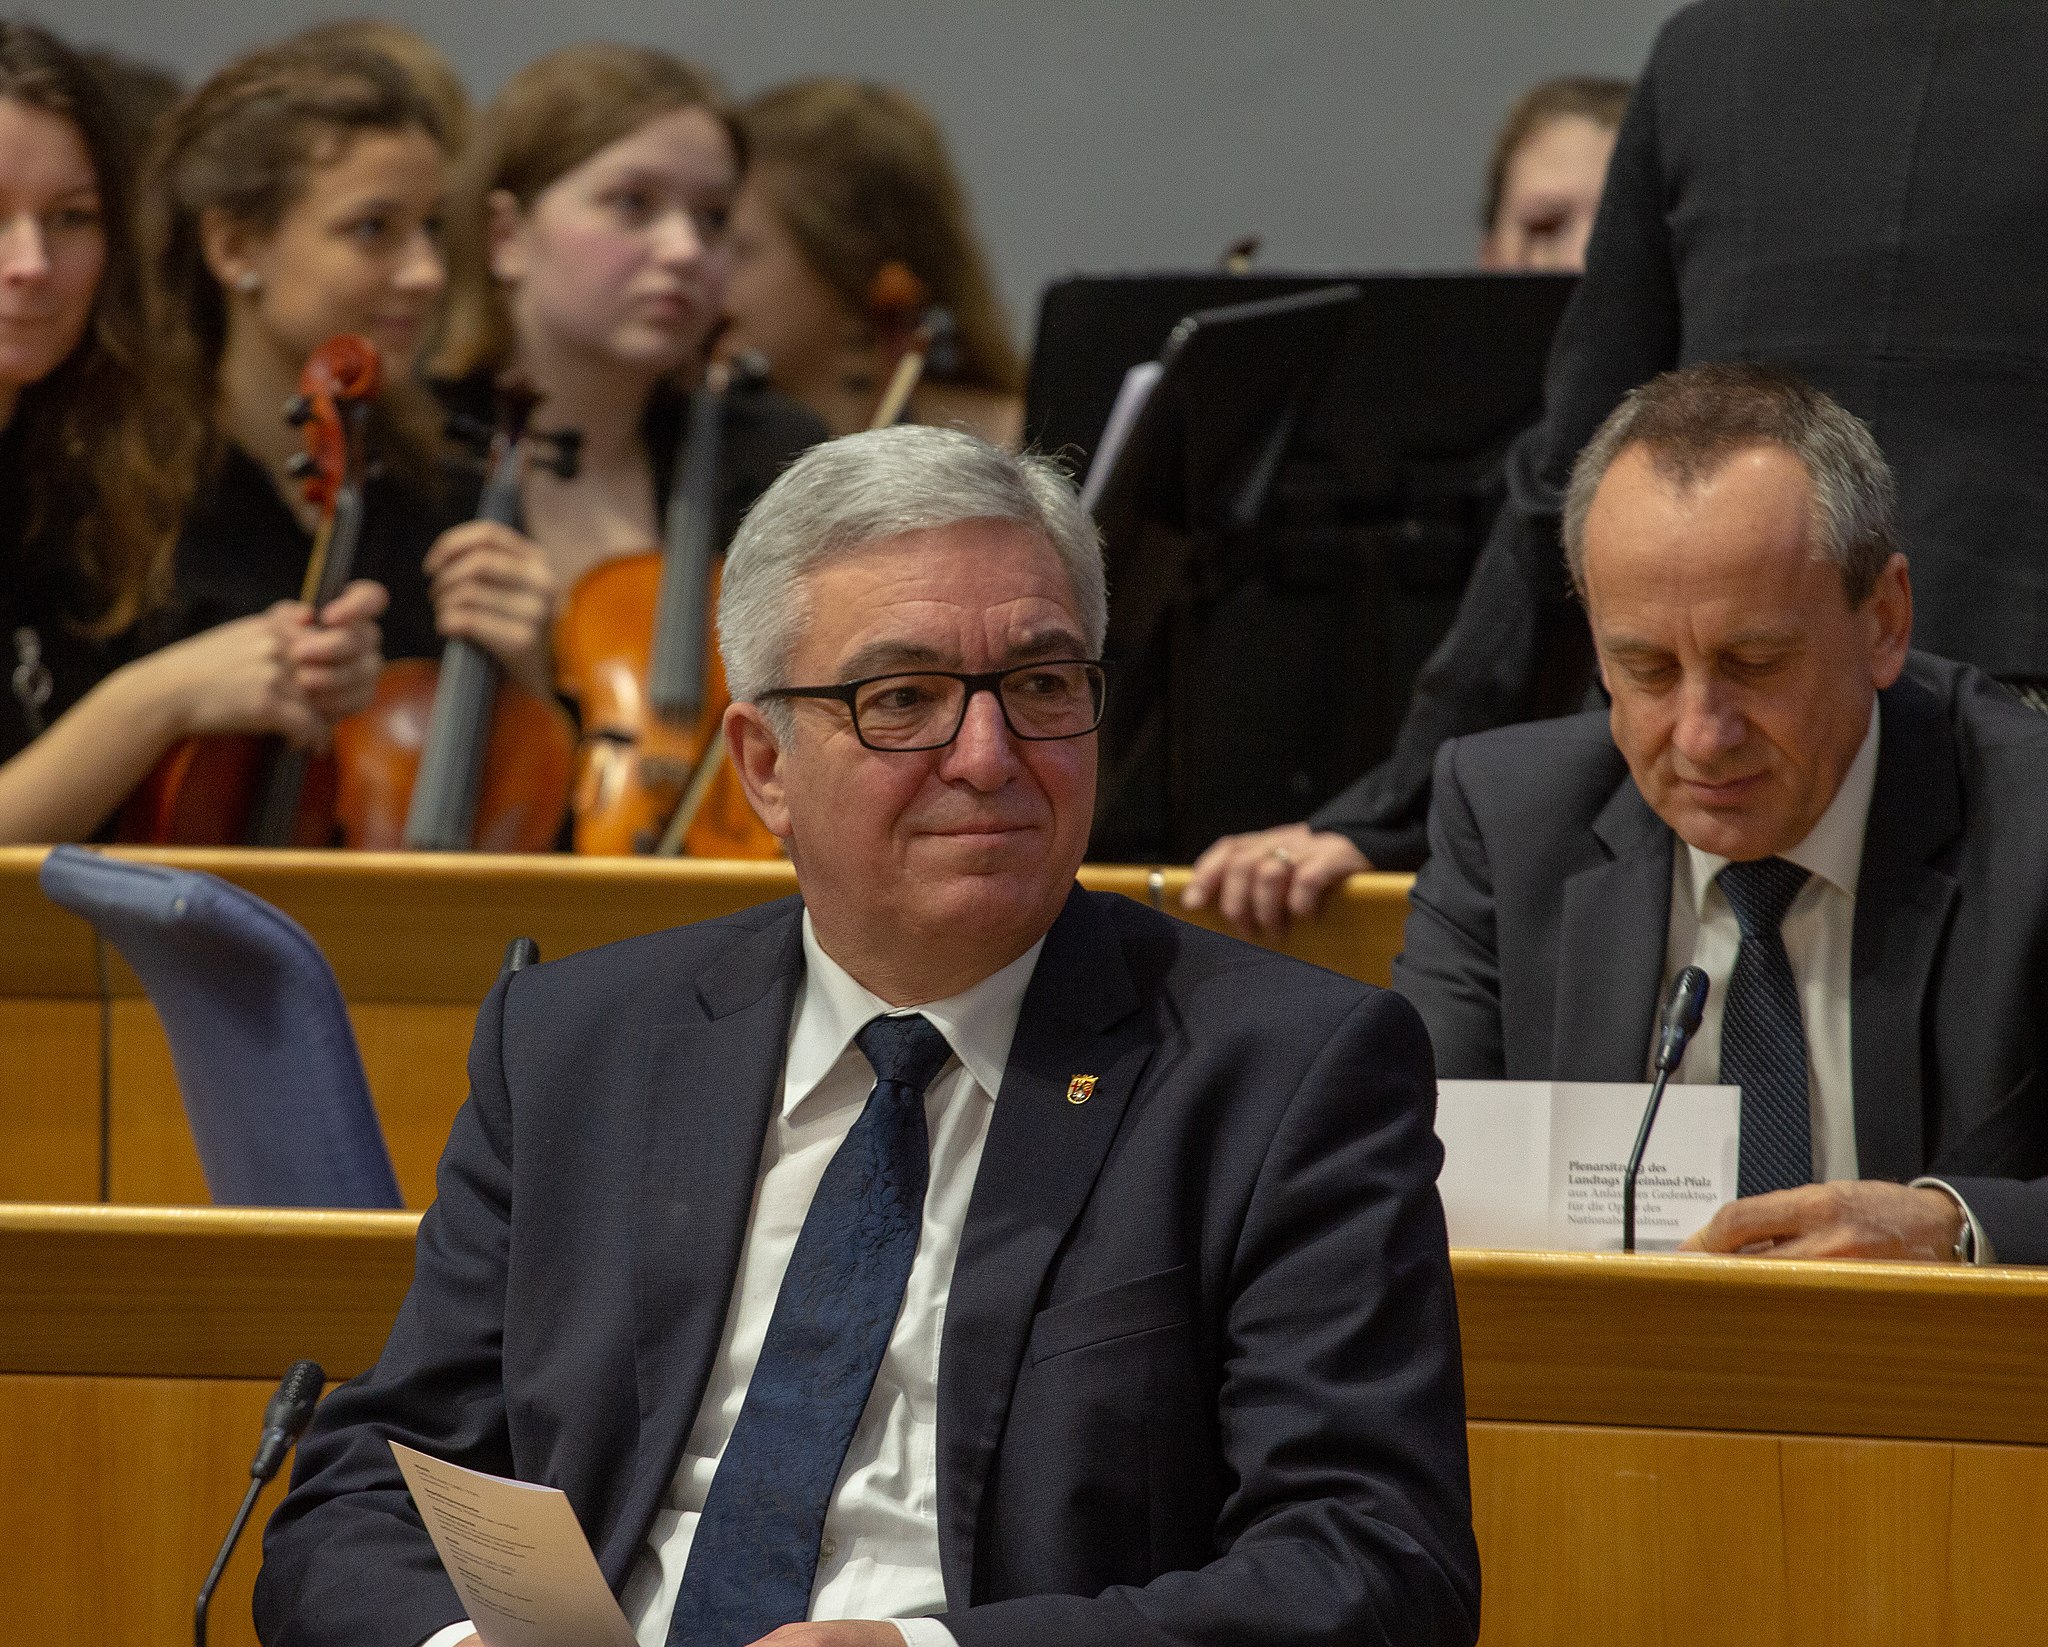 Bild: Olaf Kosinsky, Veranstaltung im Landtag Rheinland-Pfalz 4461, CC BY-SA 3.0 DE via Wikimedia Commons (Keine Änderungen vorgenommen)